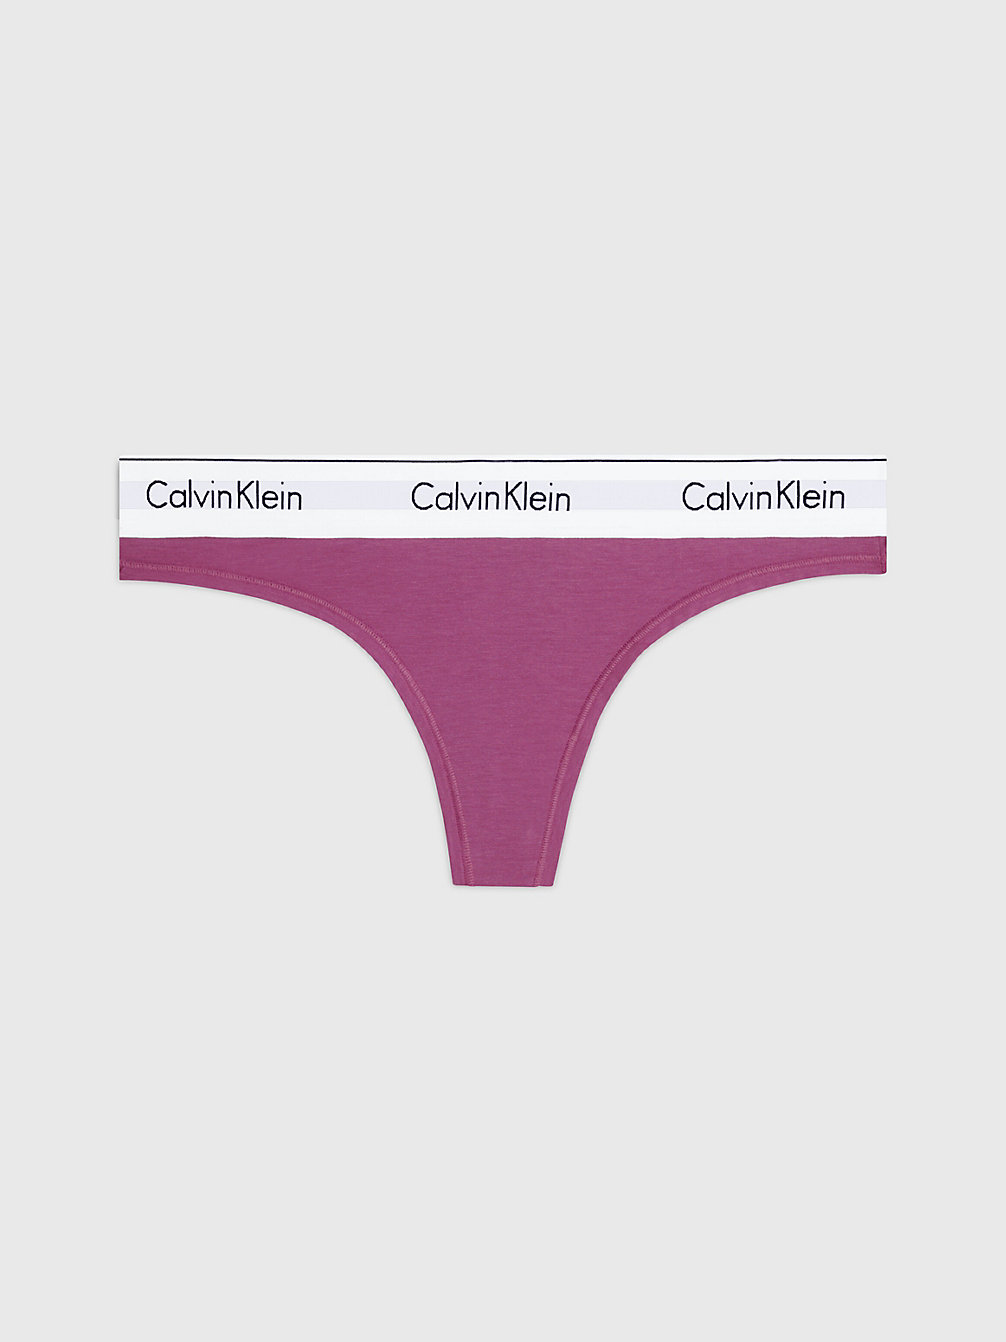 AMETHYST > String - Modern Cotton > undefined Damen - Calvin Klein